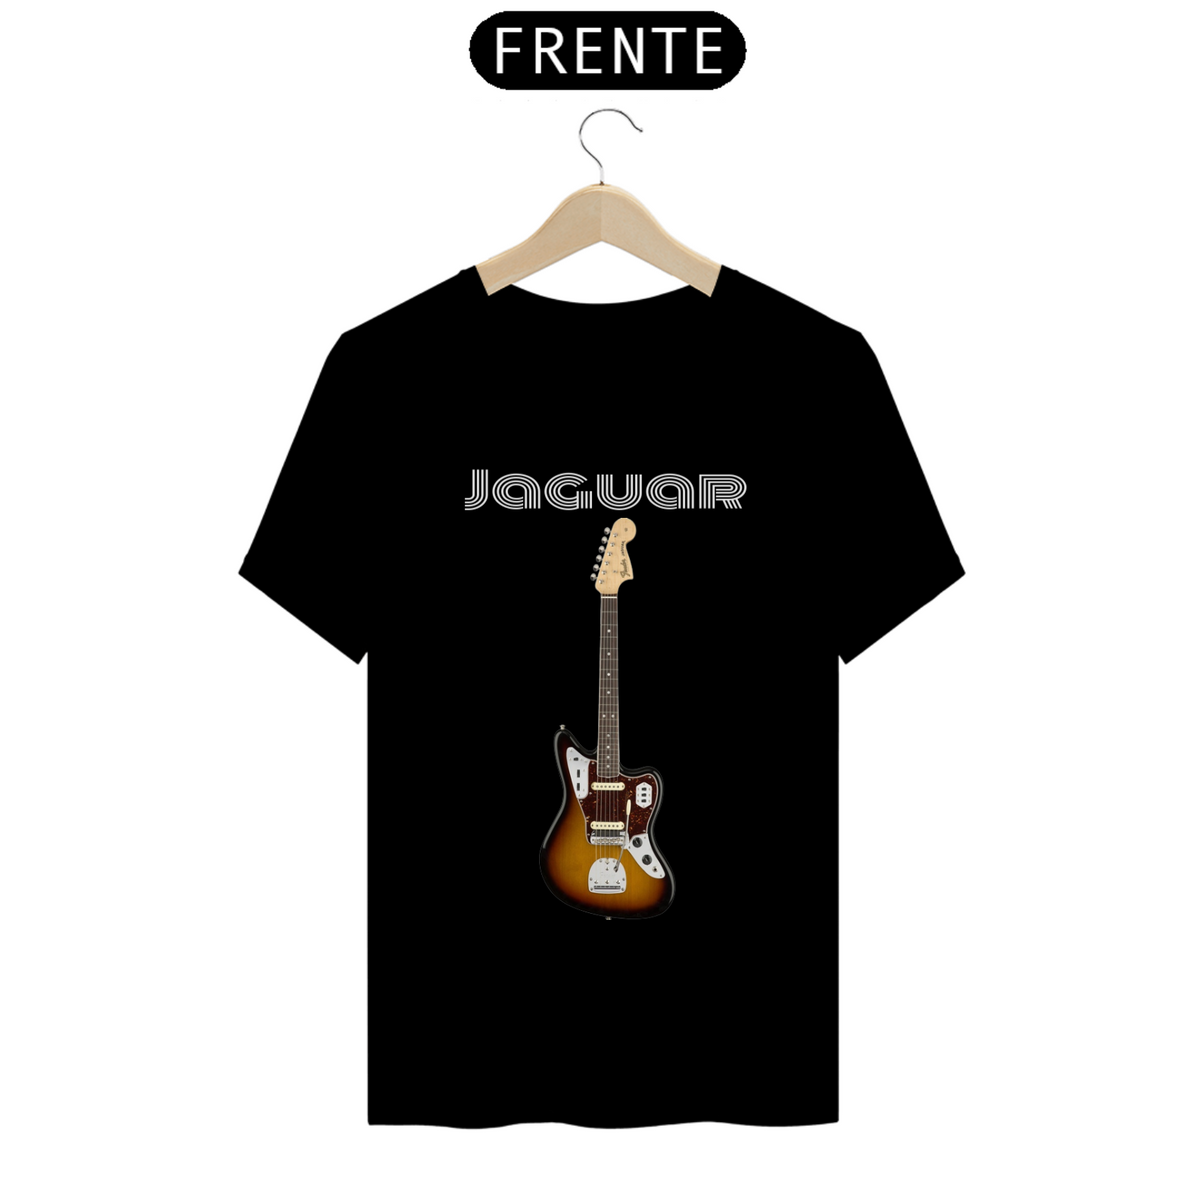 Nome do produto: Fender Jaguar